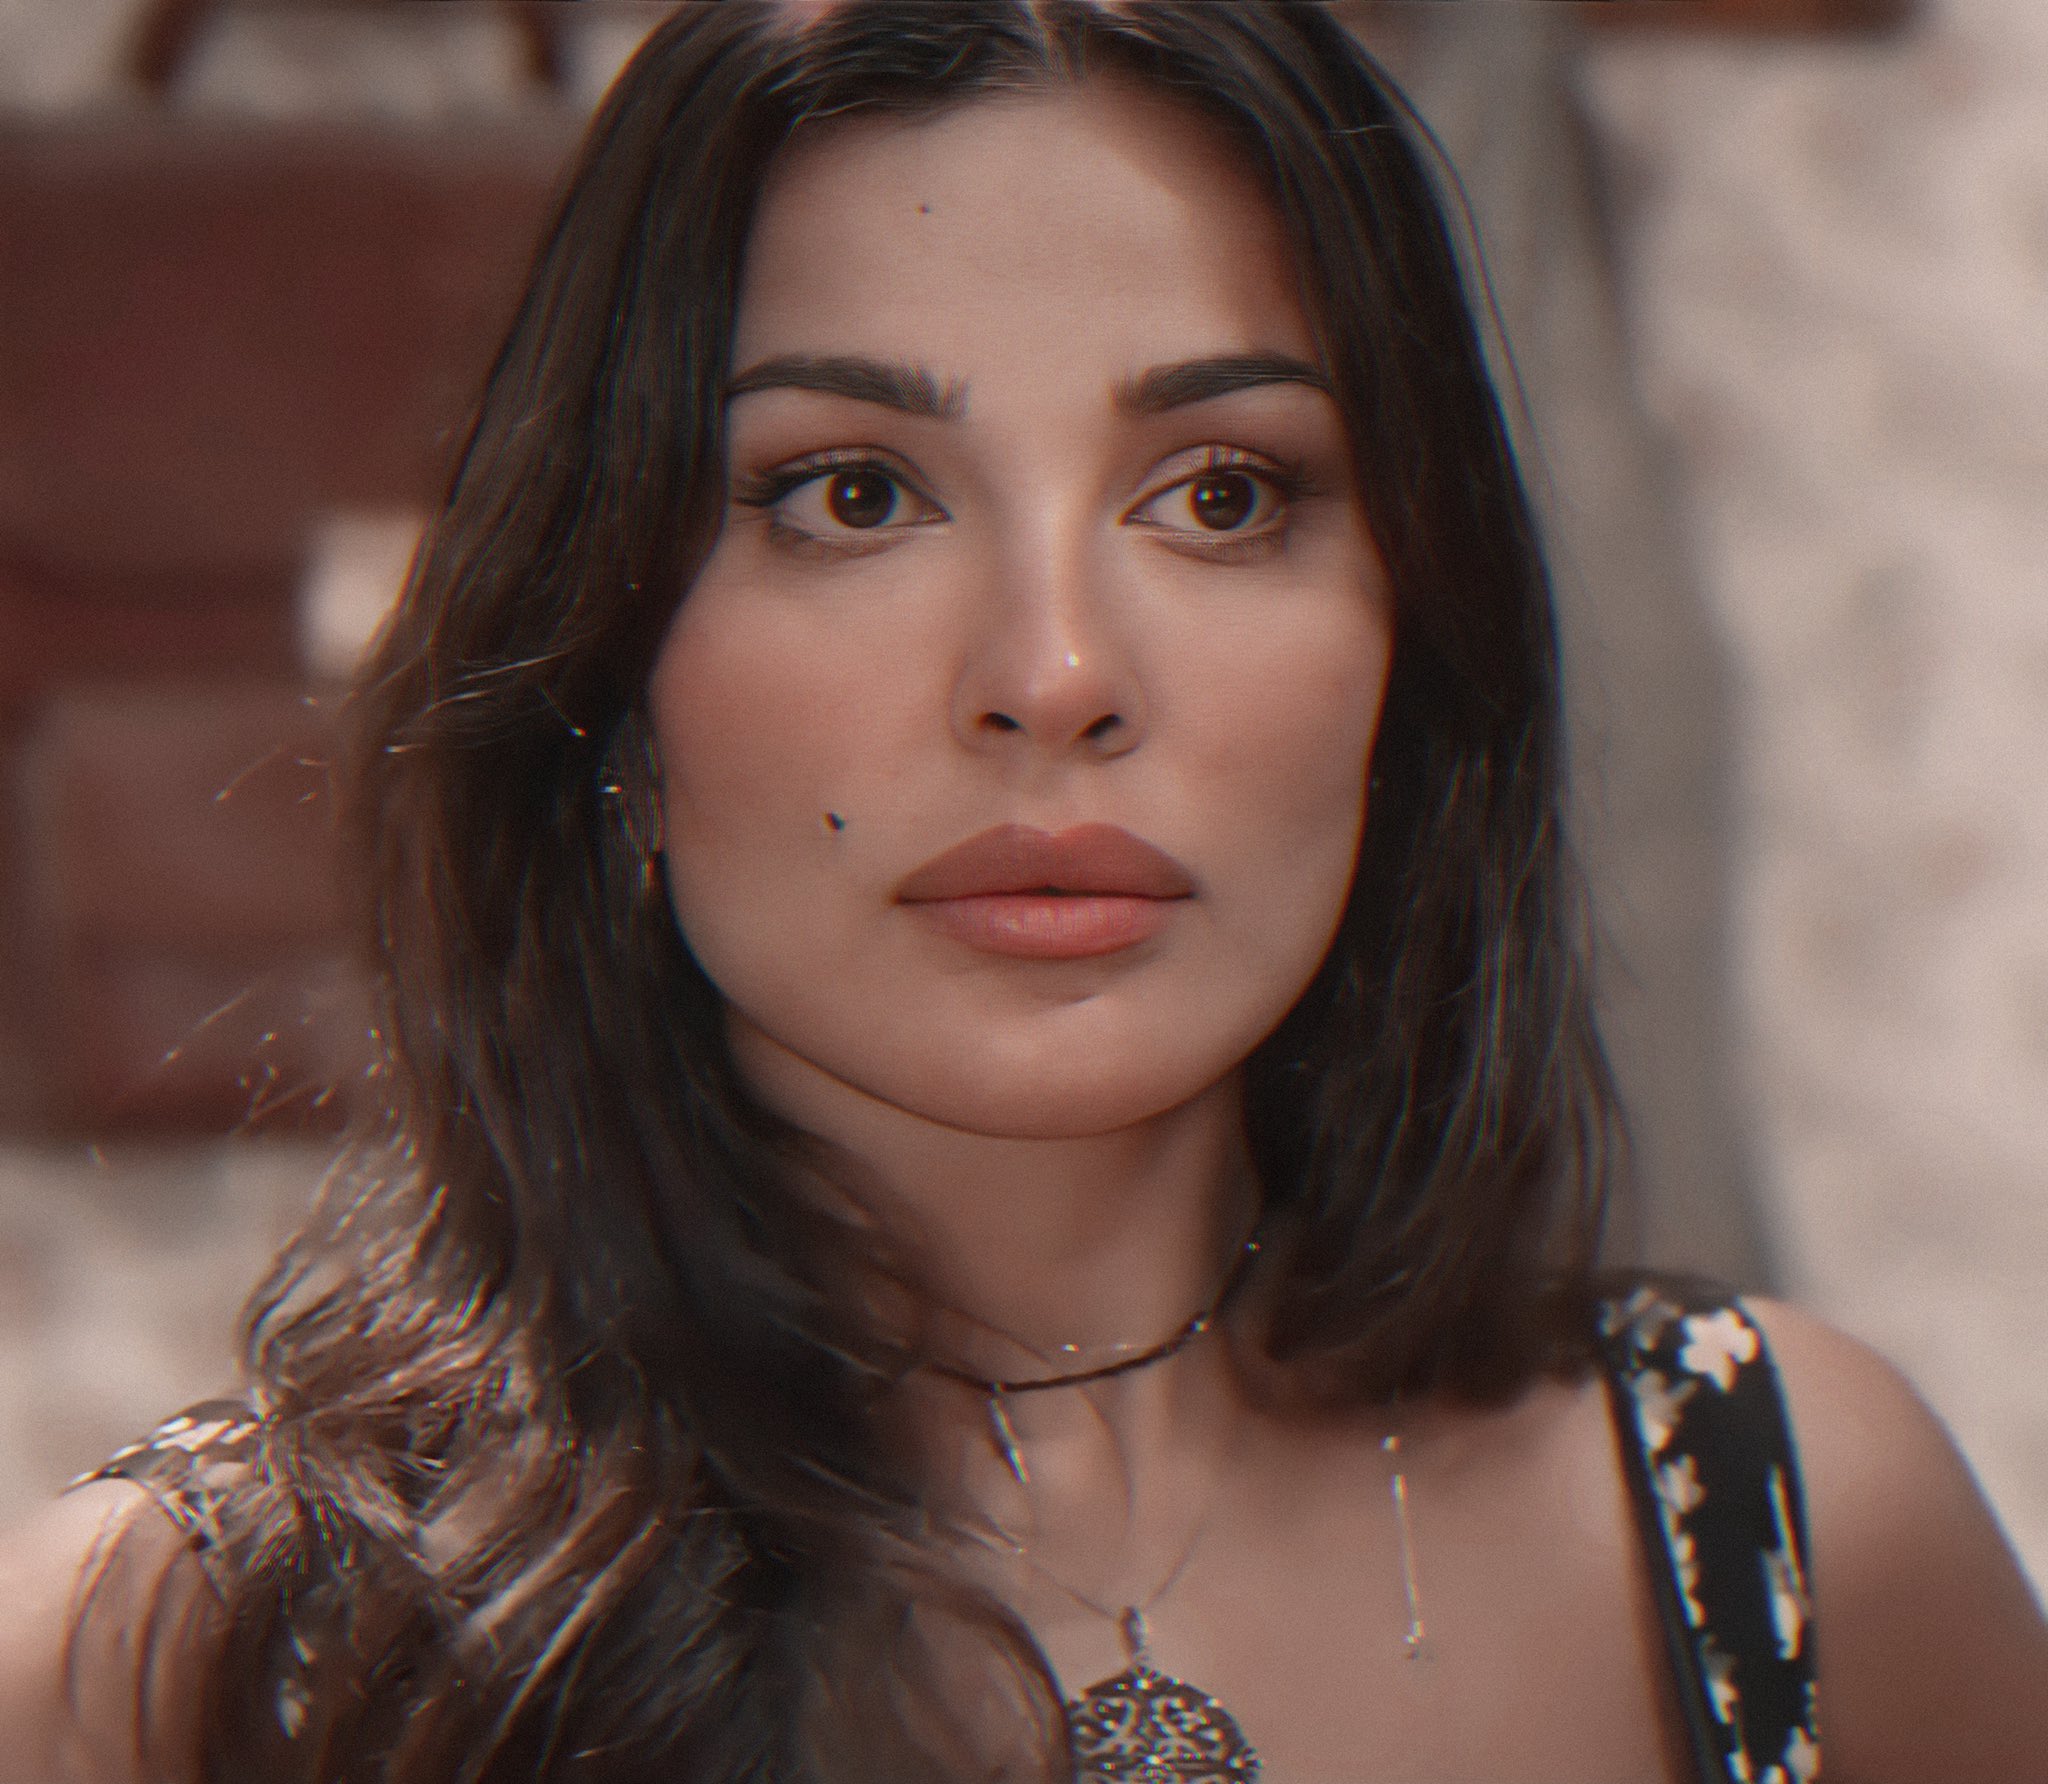 صالون زهرة يظهر كاريزما وجمال وأناقة وفخامة نادين نجيم